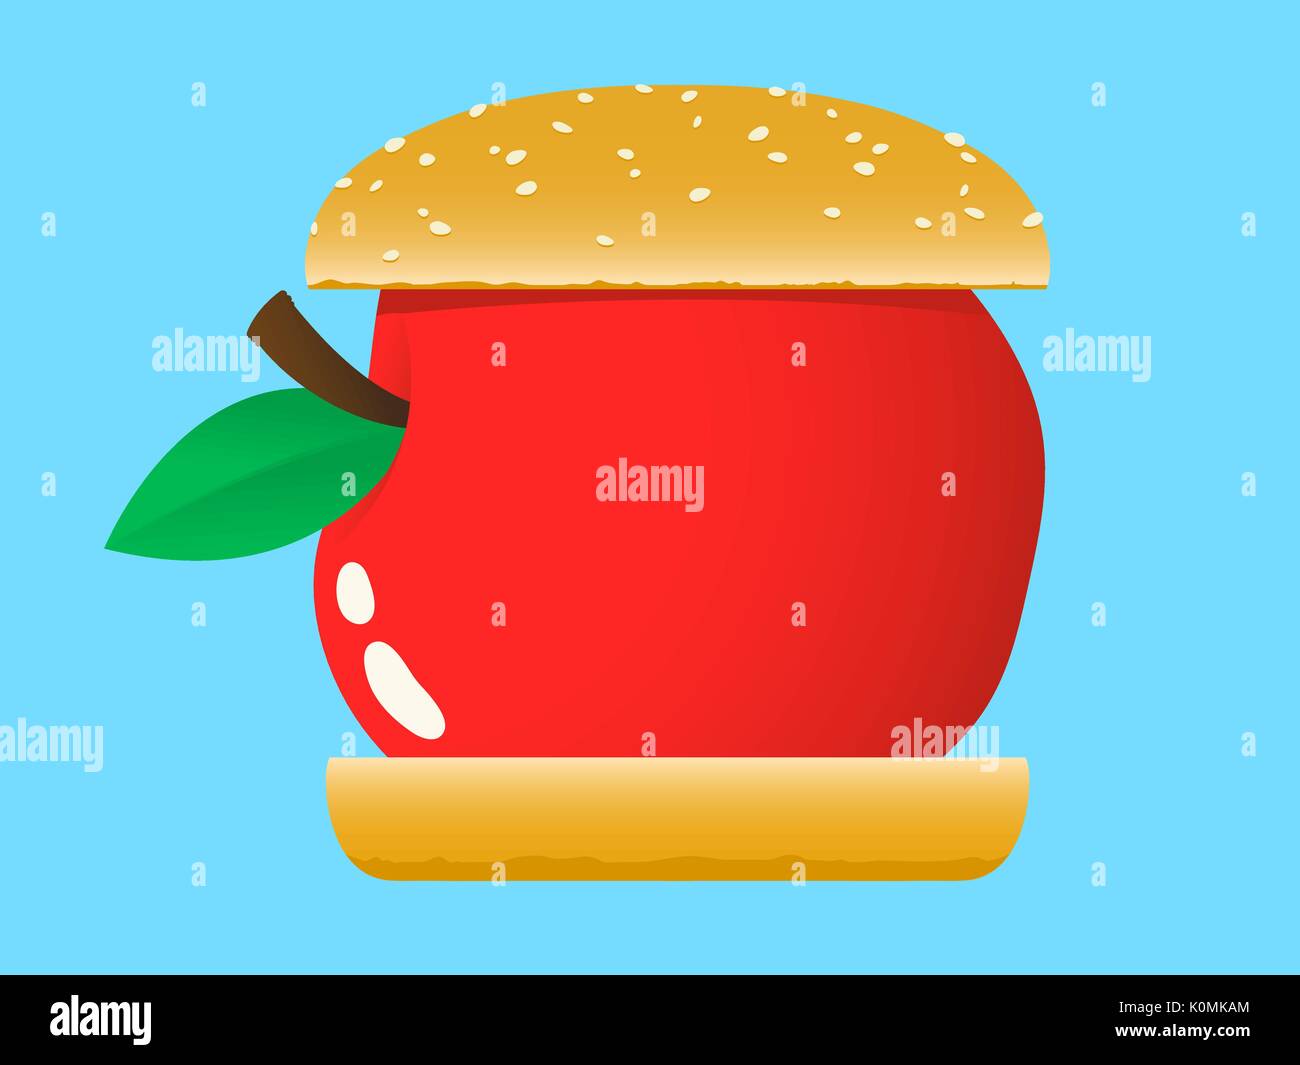 Ilustración de comida rápida hamburguesa de Apple Ilustración del Vector